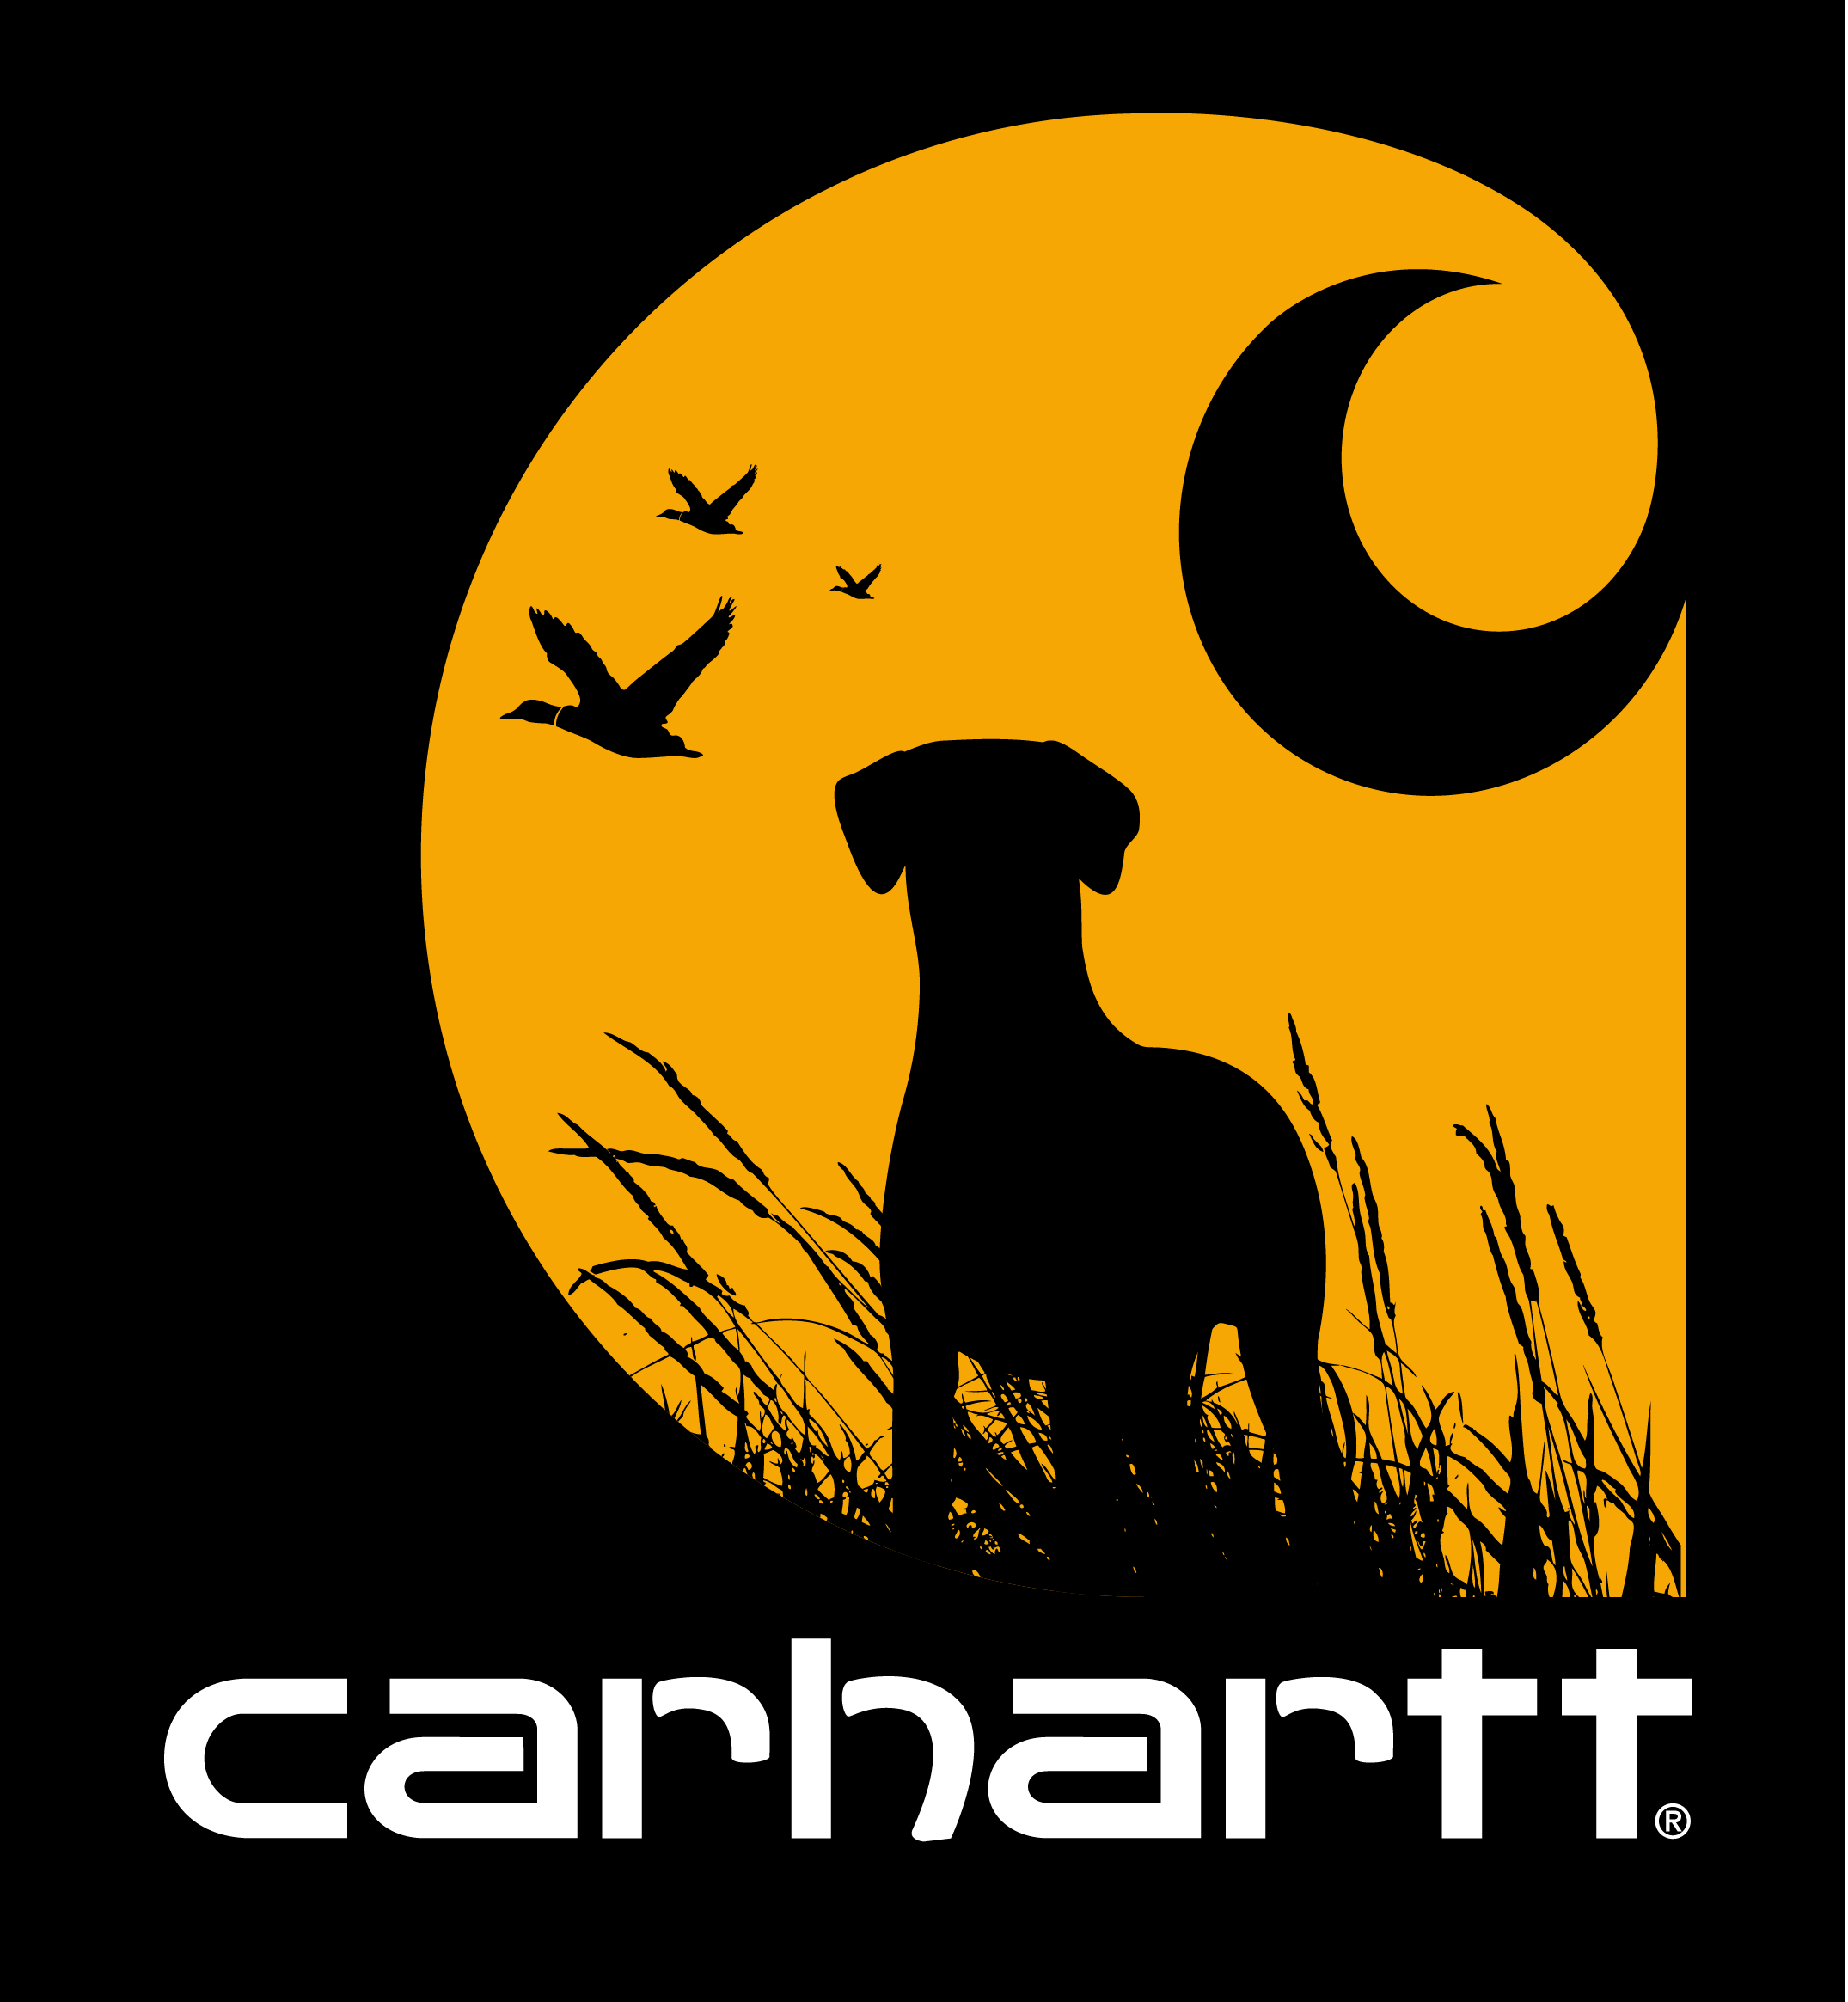 Carhartt Dogs T Shirt Design Logo Wallpaper